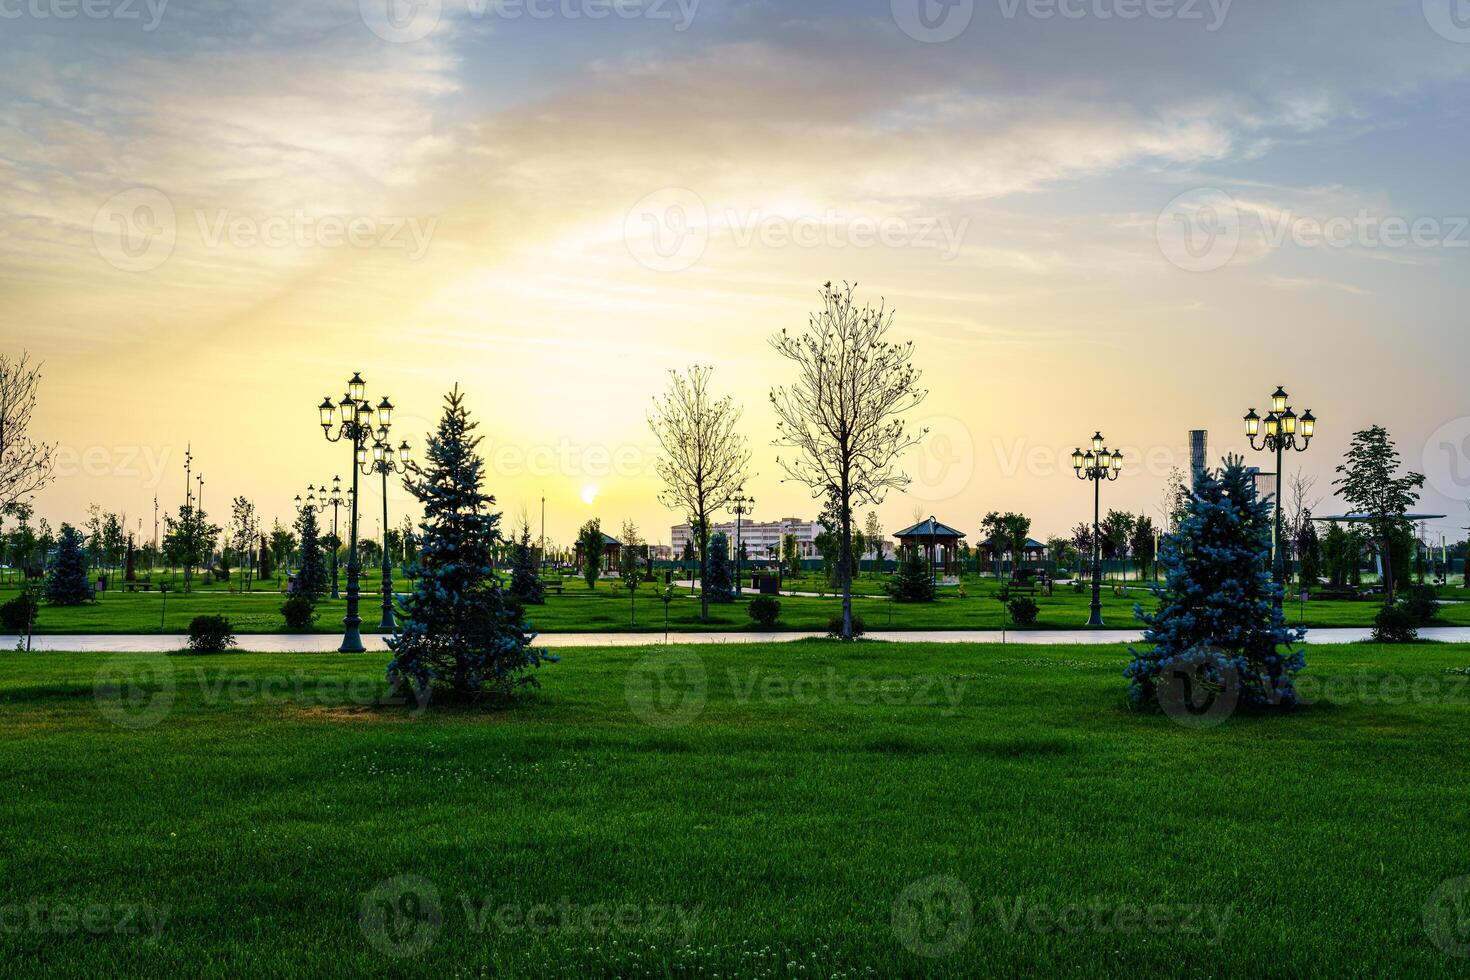 stad parkera i tidigt sommar eller vår med lyktor, ung grön gräsmatta, träd och dramatisk molnig himmel på en solnedgång eller soluppgång. foto